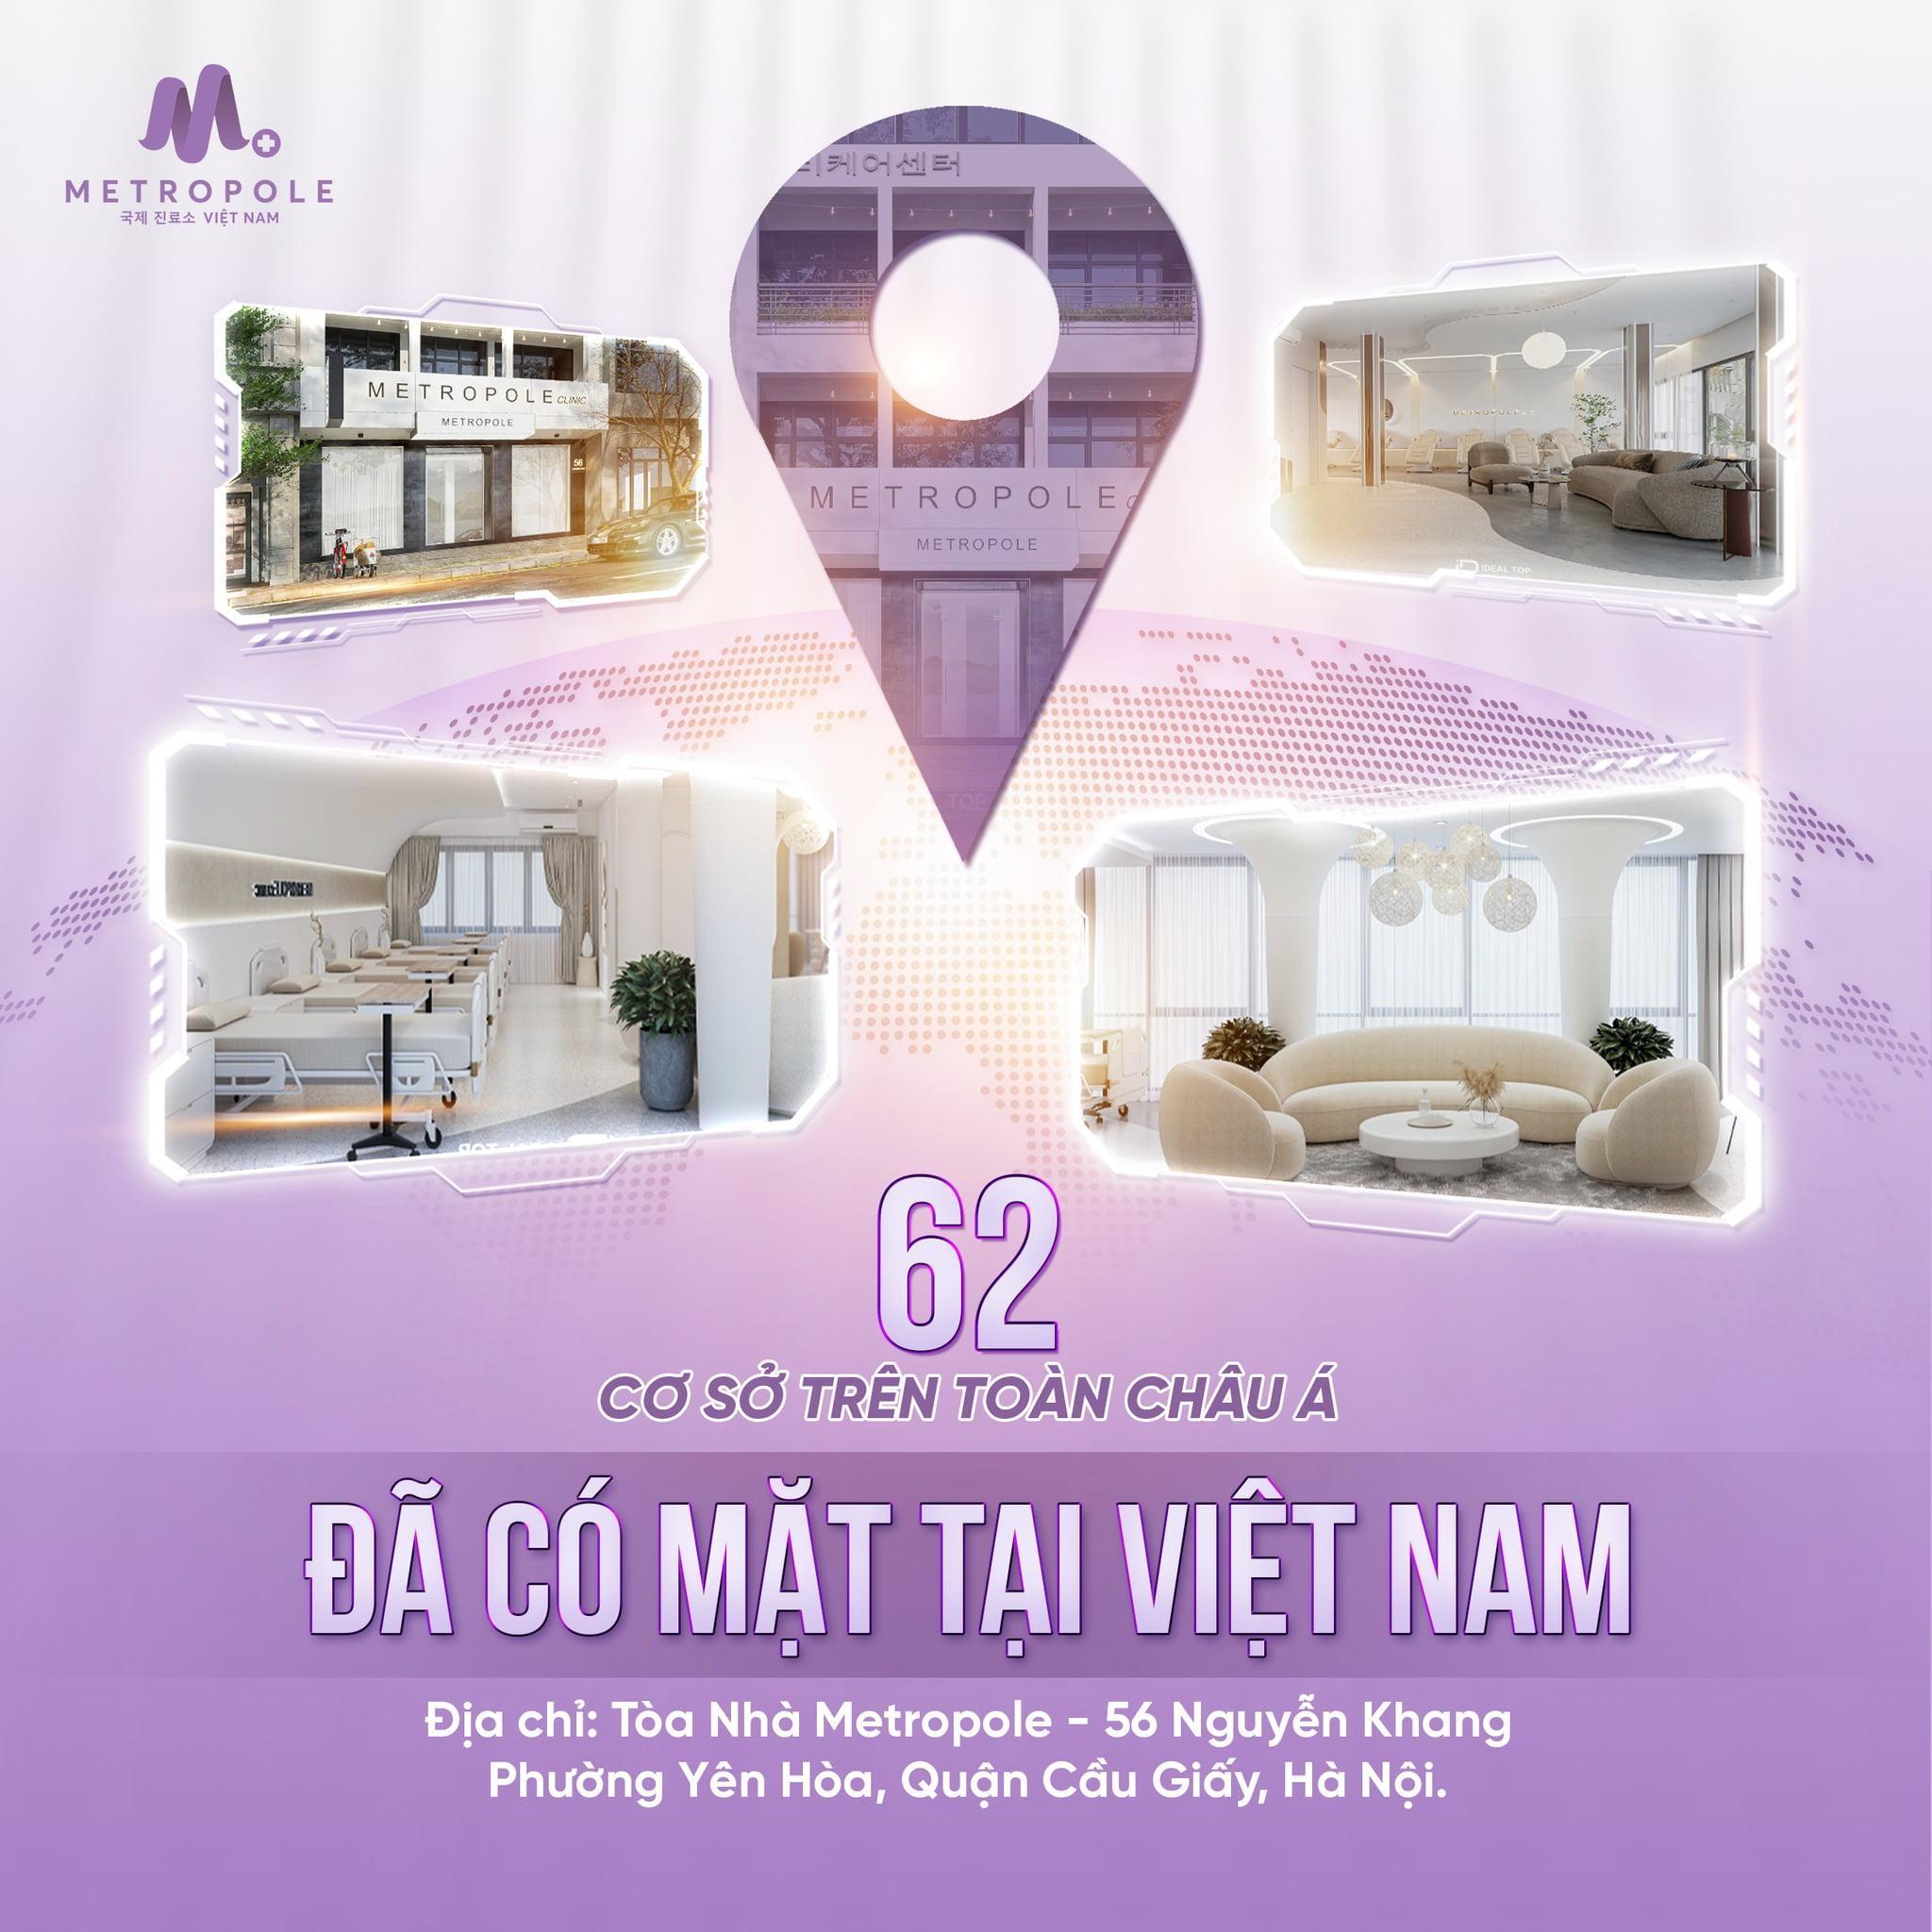 Hệ thống thẩm mỹ top 1 châu Á Metropole Clinic đã có mặt tại Việt Nam